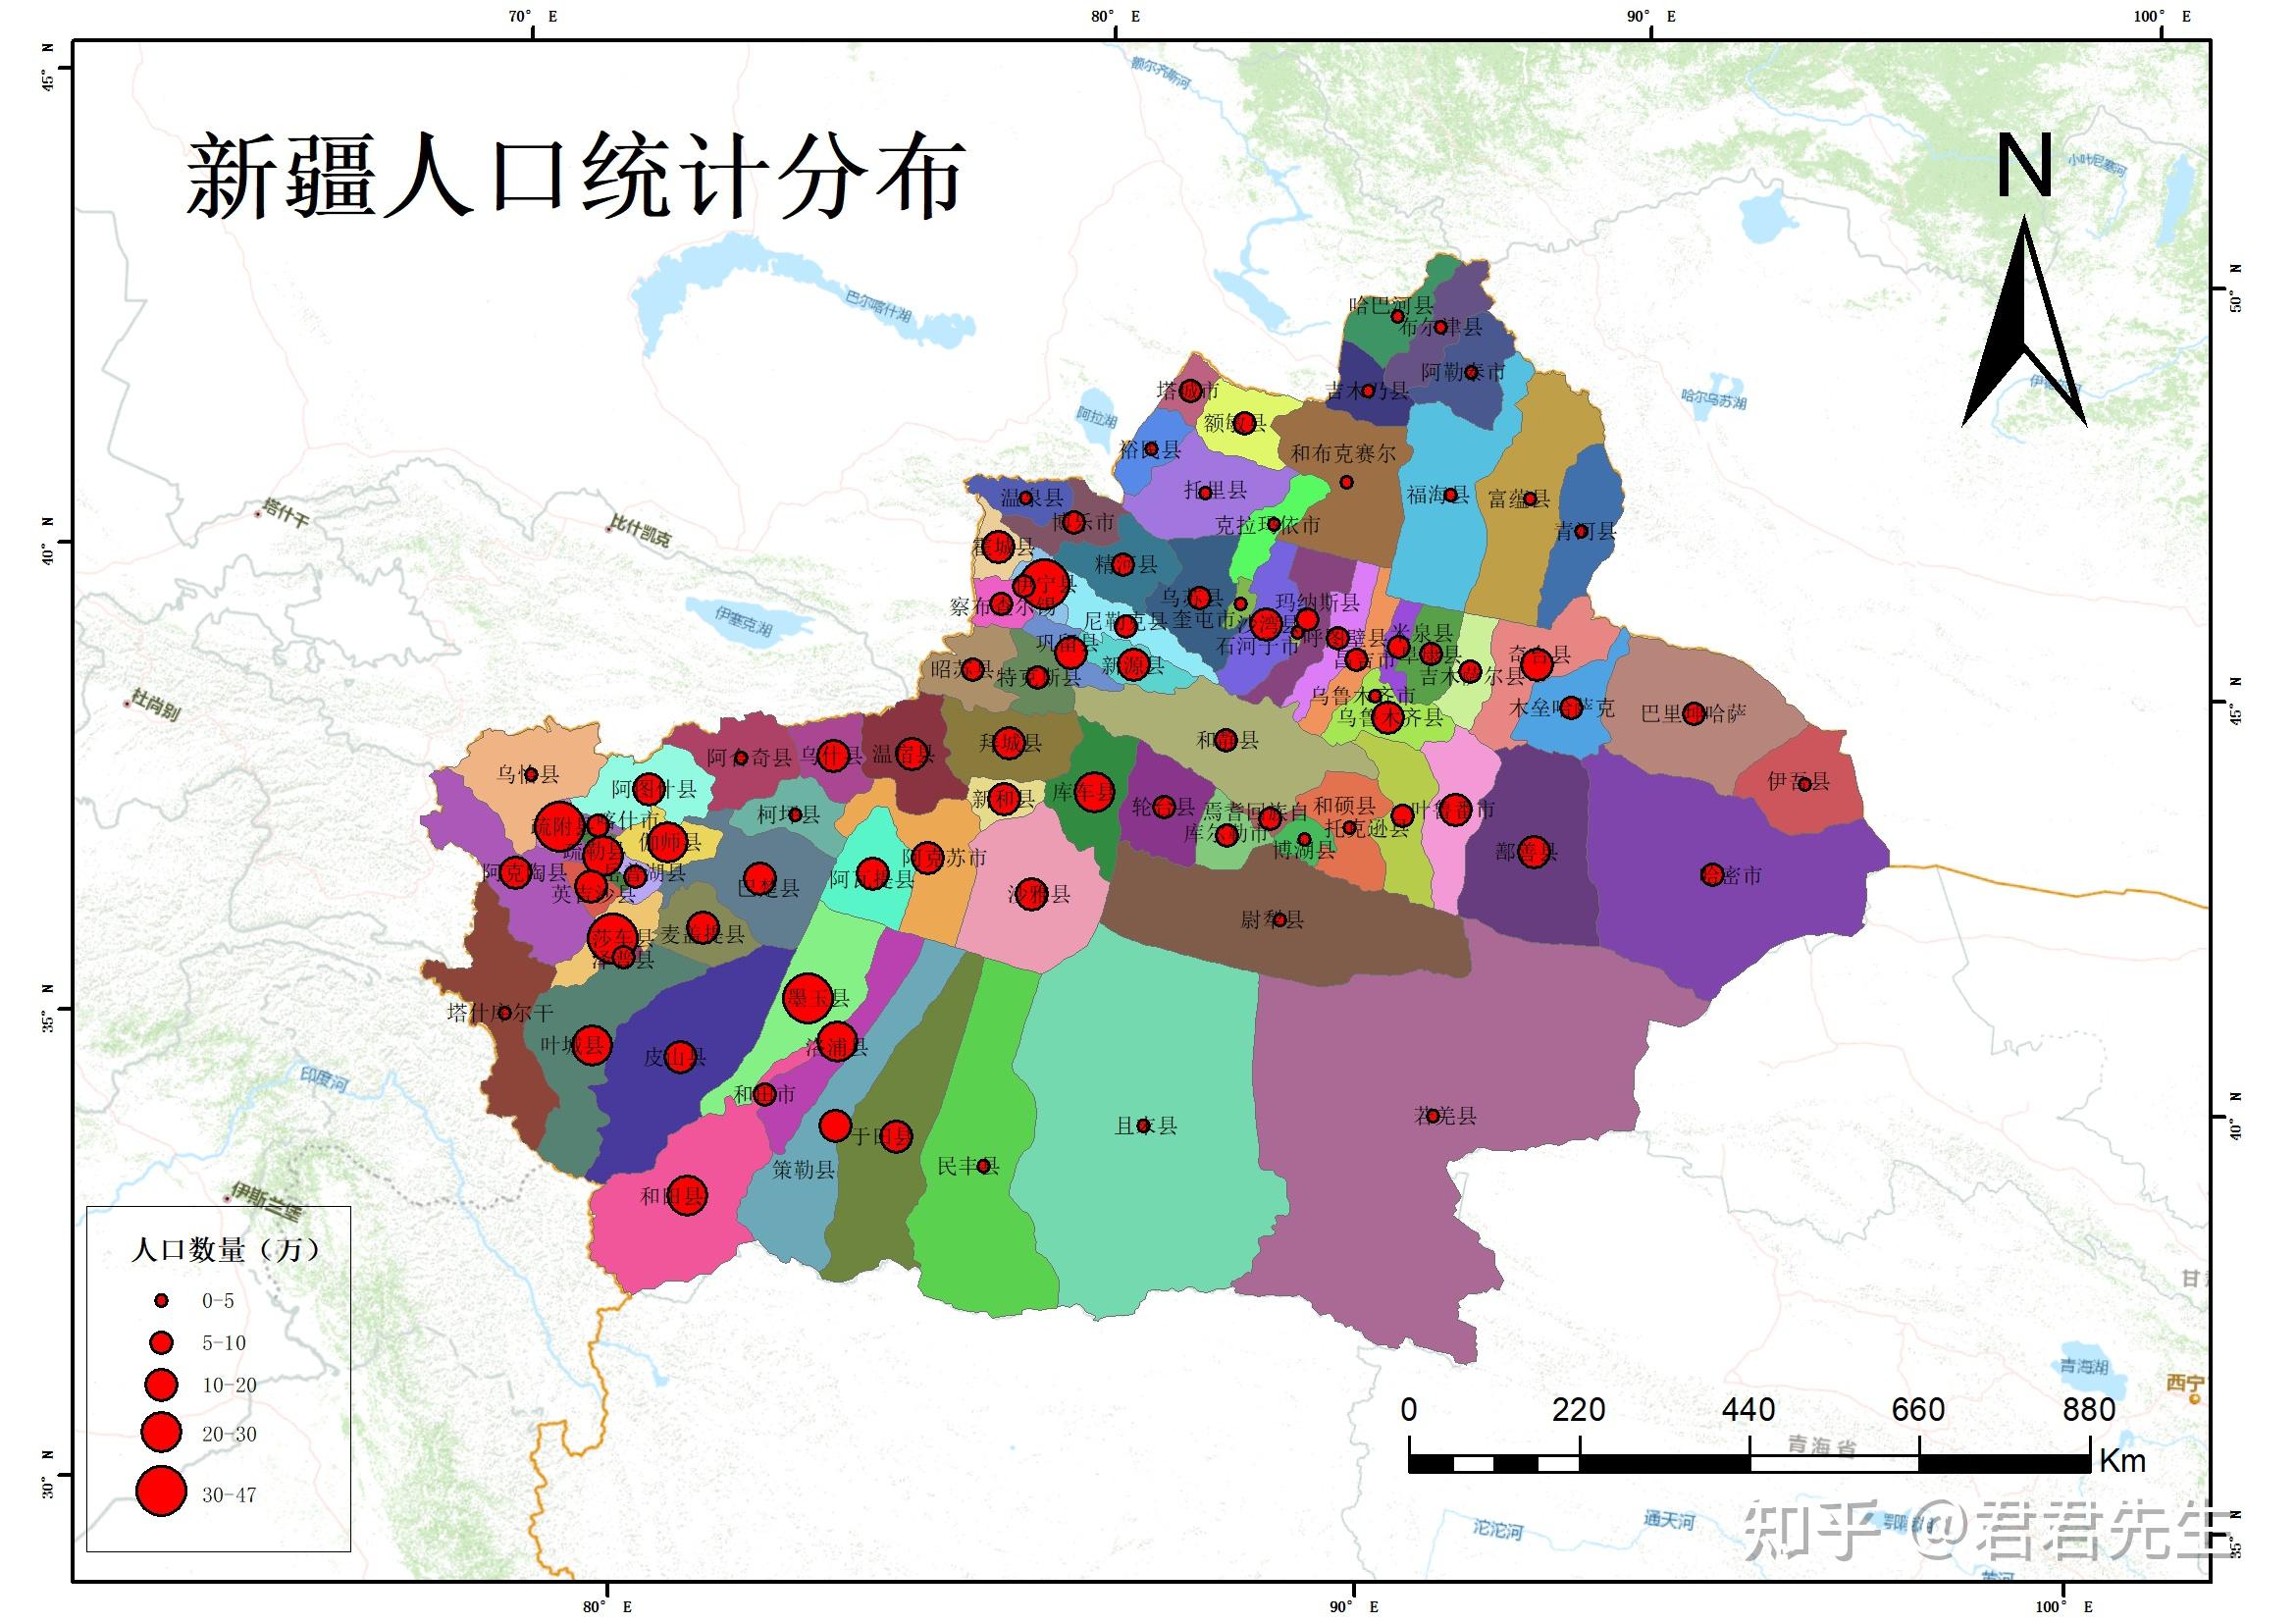 arcgis教程49专题图制作之人口地图2新疆行政区人口分布统计